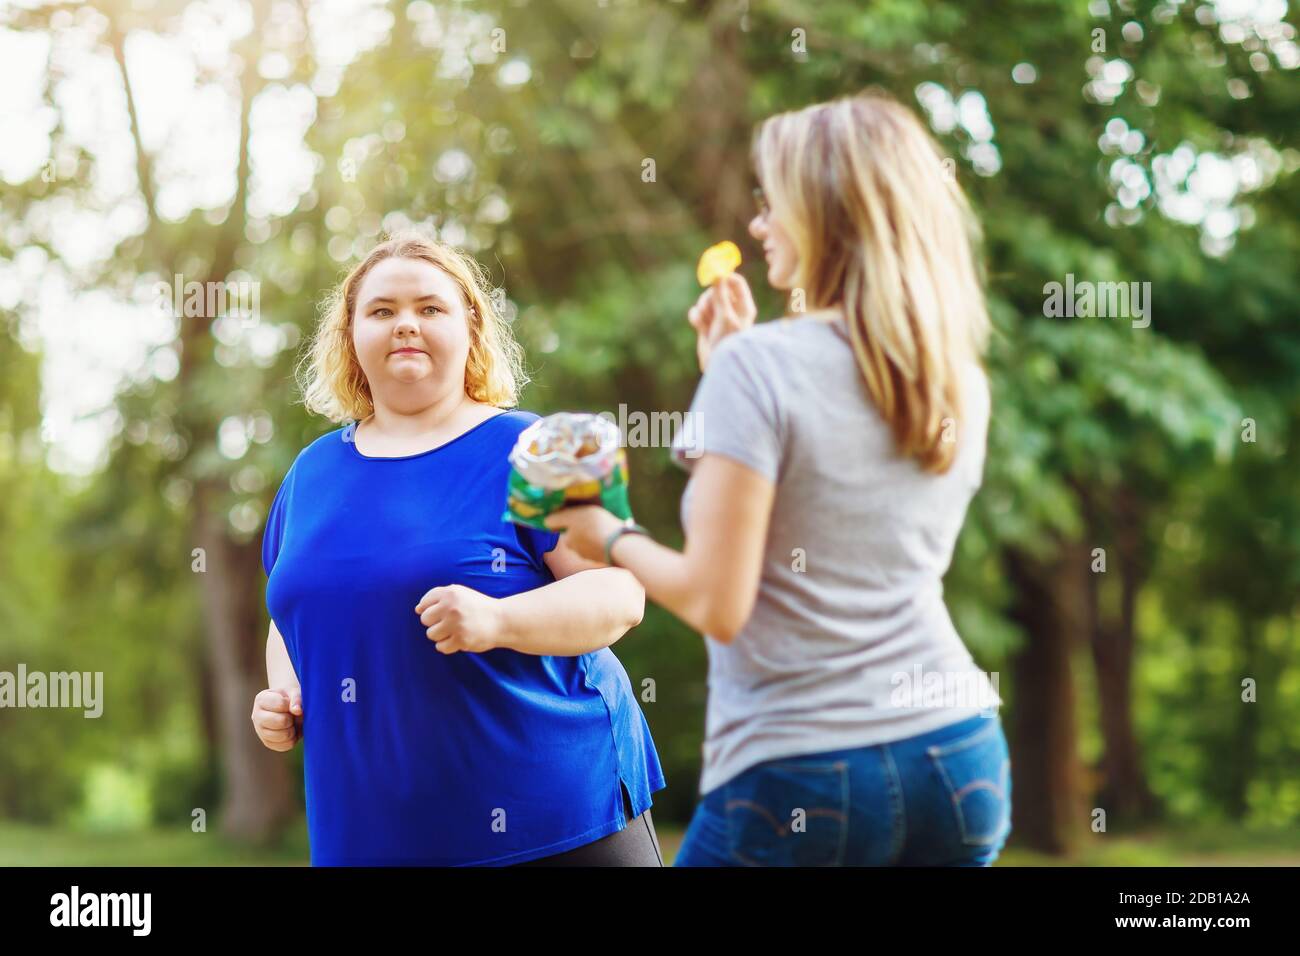 Eine junge Blondine von plus Größen läuft im Park in der Nähe einer Frau, die Chips isst. Das Konzept eines gesunden Lebensstils und der Selbstverbesserung Stockfoto